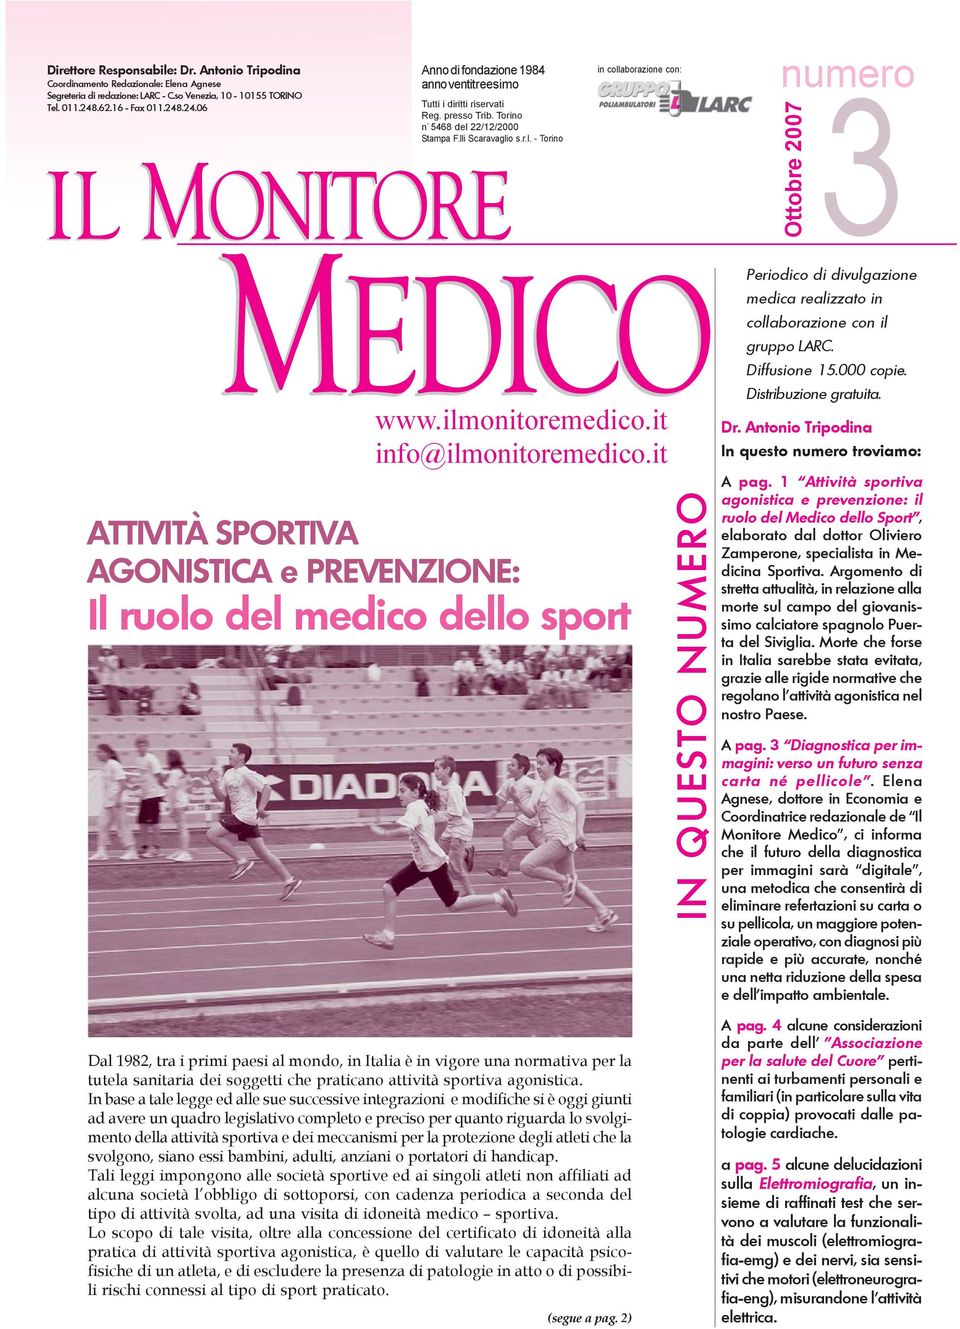 ilmonitoremedico.it info@ilmonitoremedico.